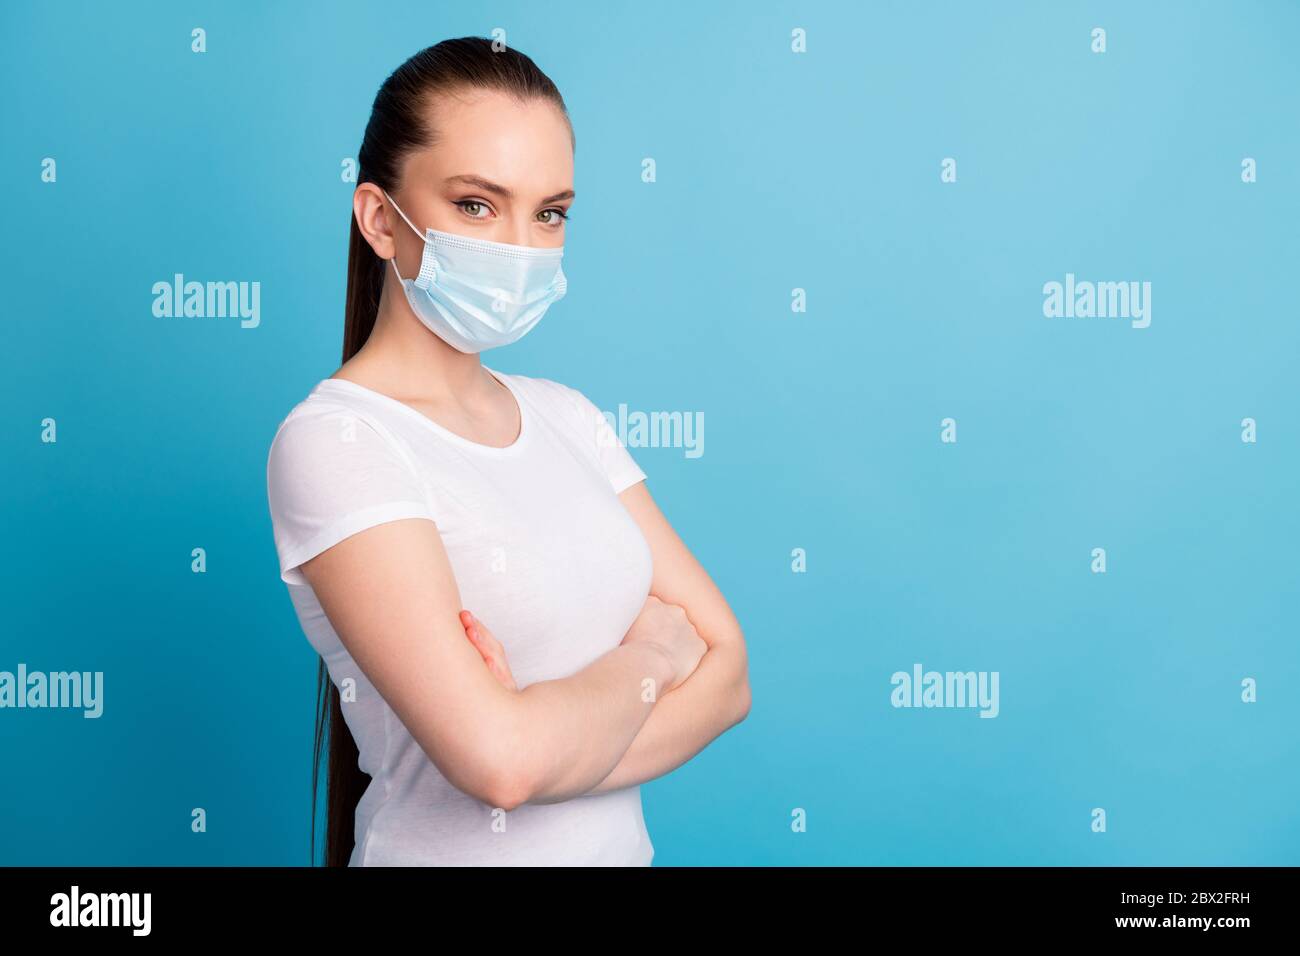 Profil Foto von selbstbewussten Assert Dame Krankenhaus Untersuchung Business-Center hören Arzt Arme gekreuzt tragen schützen Gesicht medizinische Maske weiß t Stockfoto